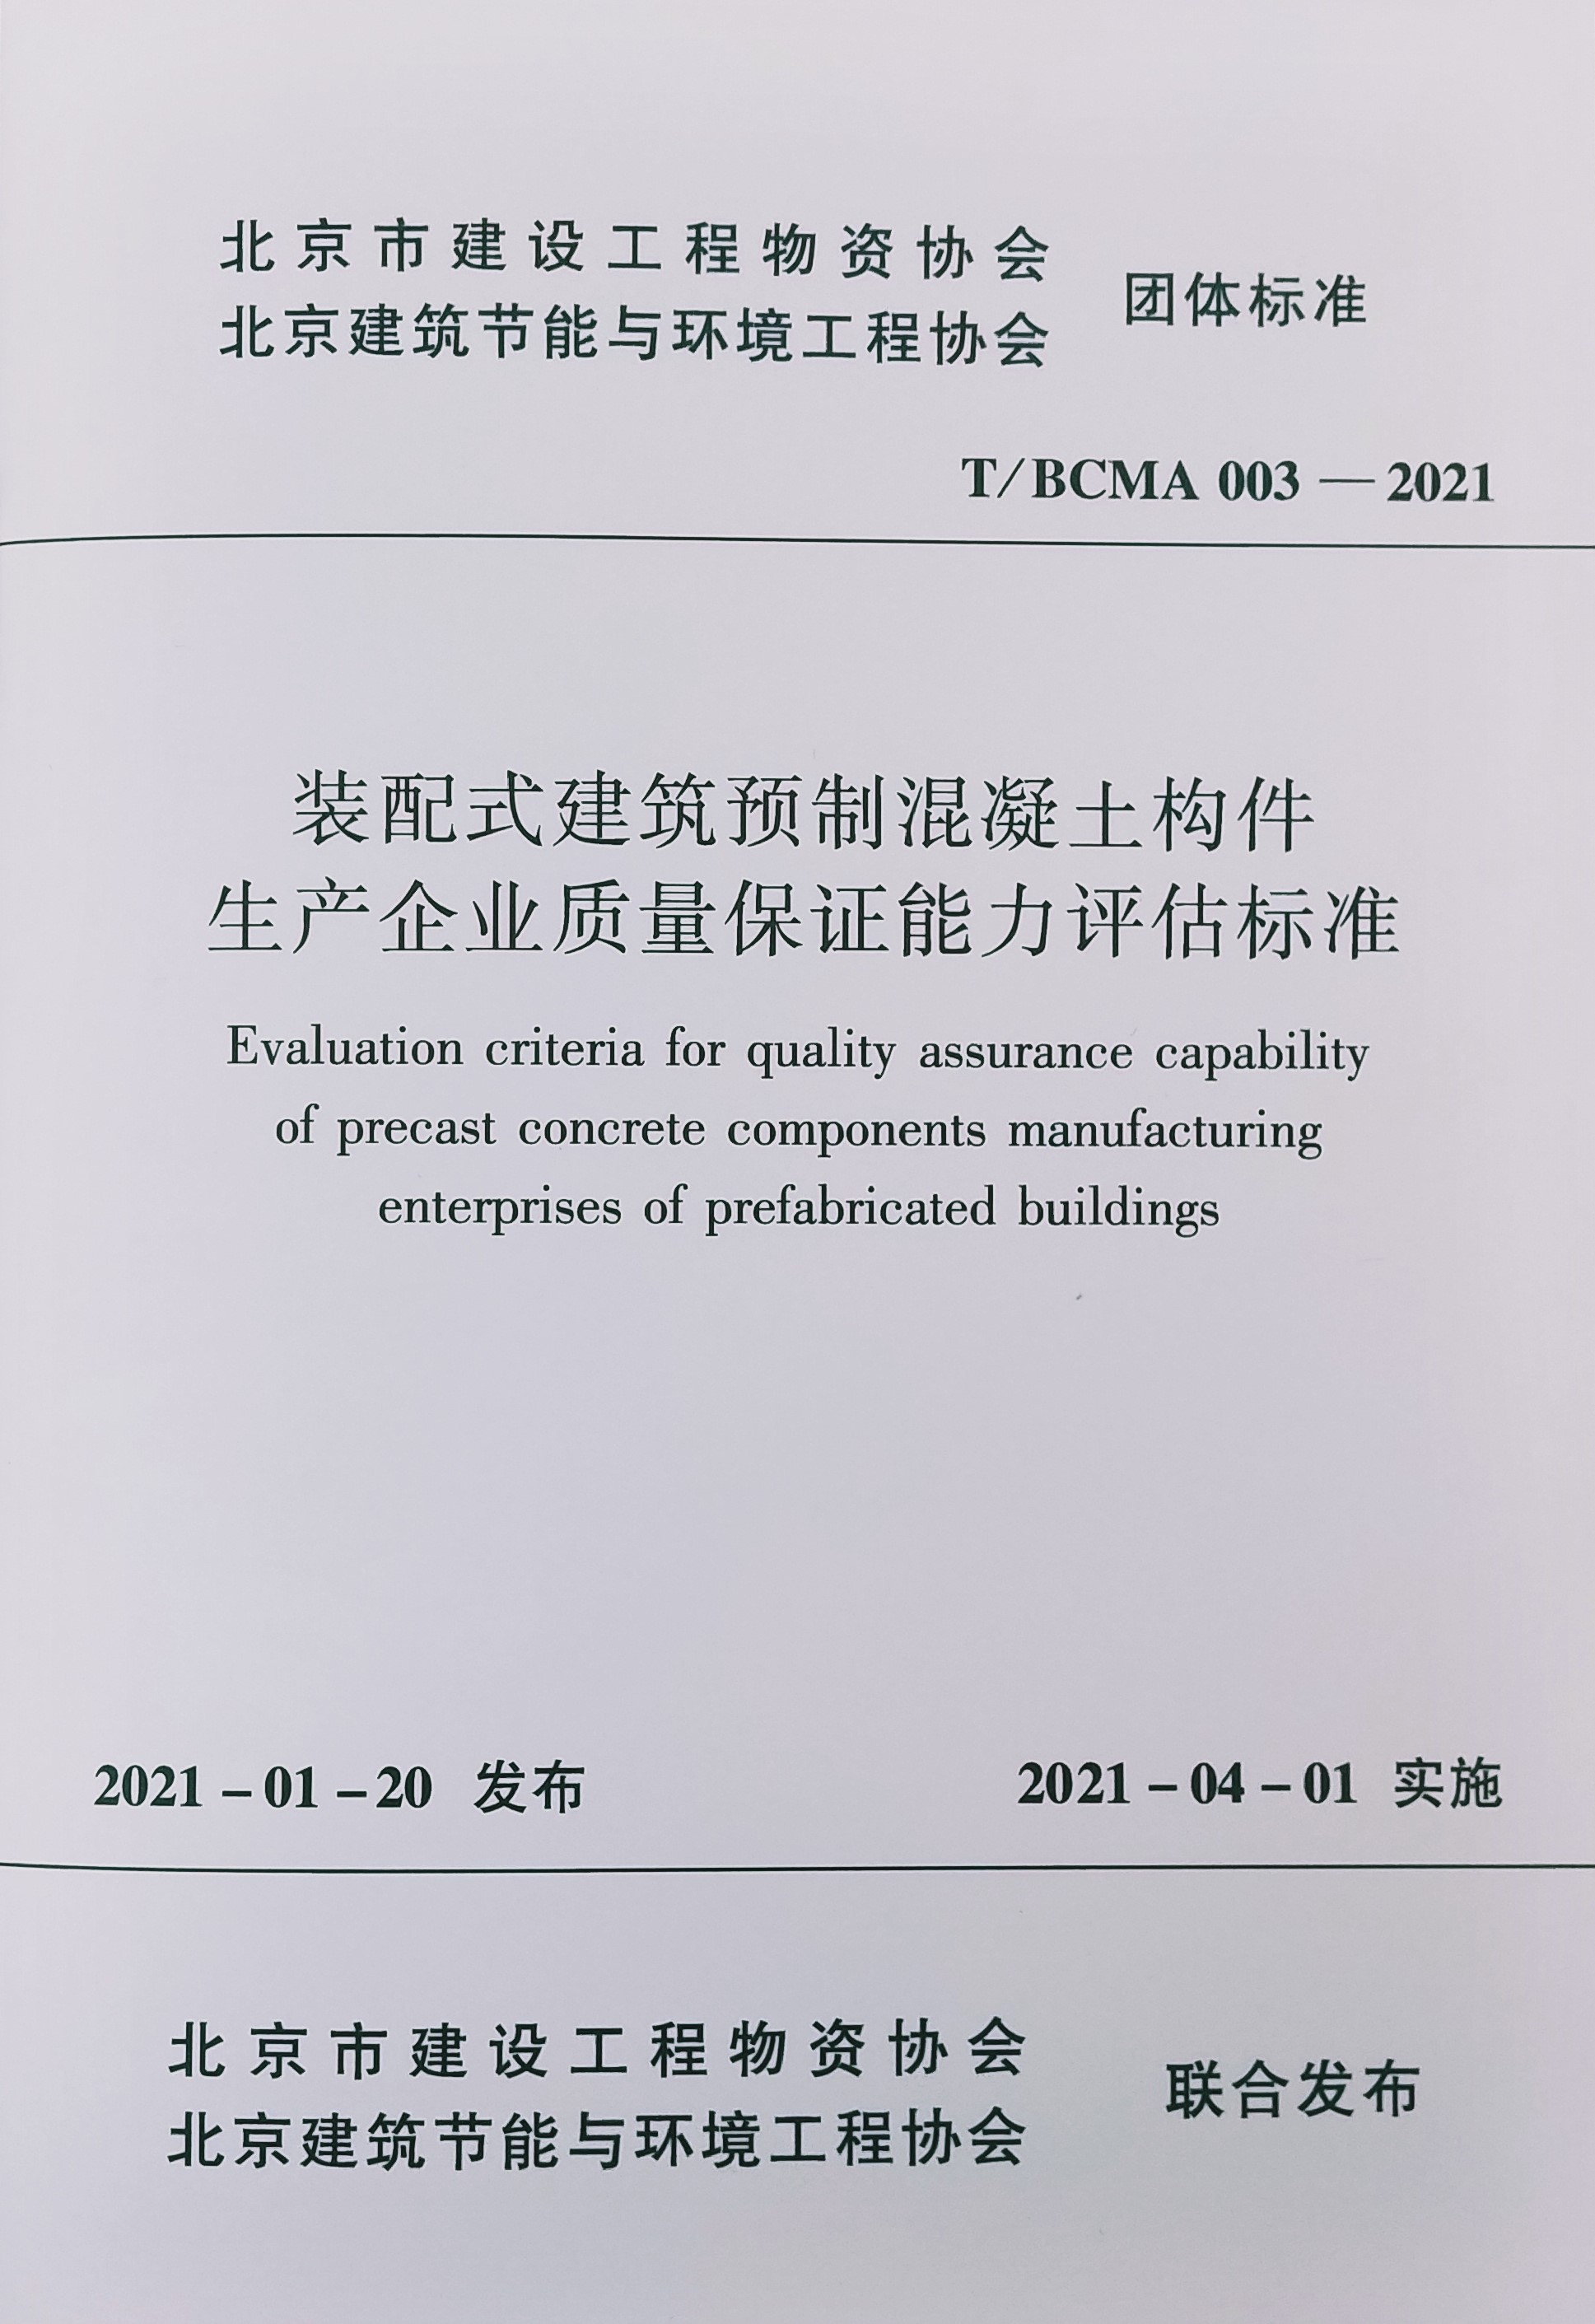 装配式建筑预制混凝土构件生产企业质量保证能力评估标准(T/BCMA003-2021)